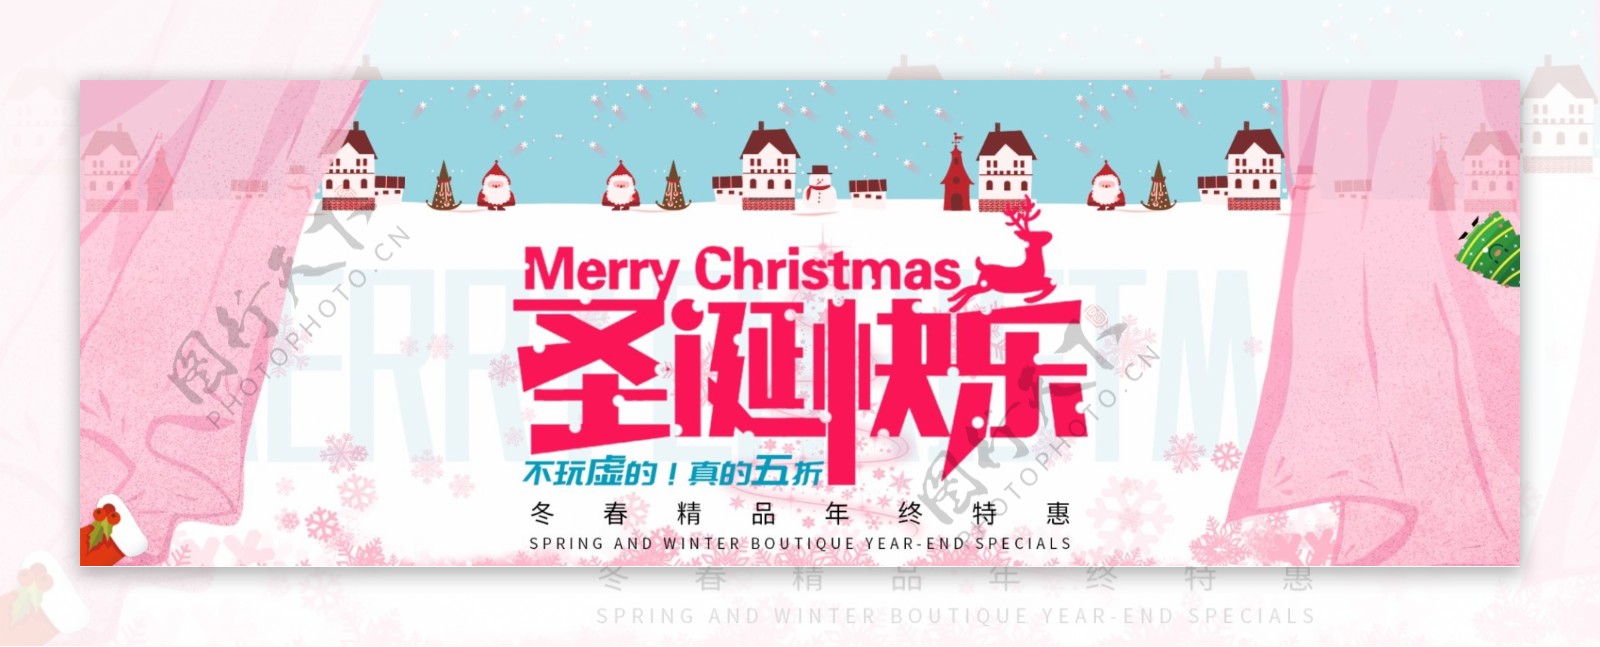 蓝色窗帘小镇圣诞快乐淘宝电商banner